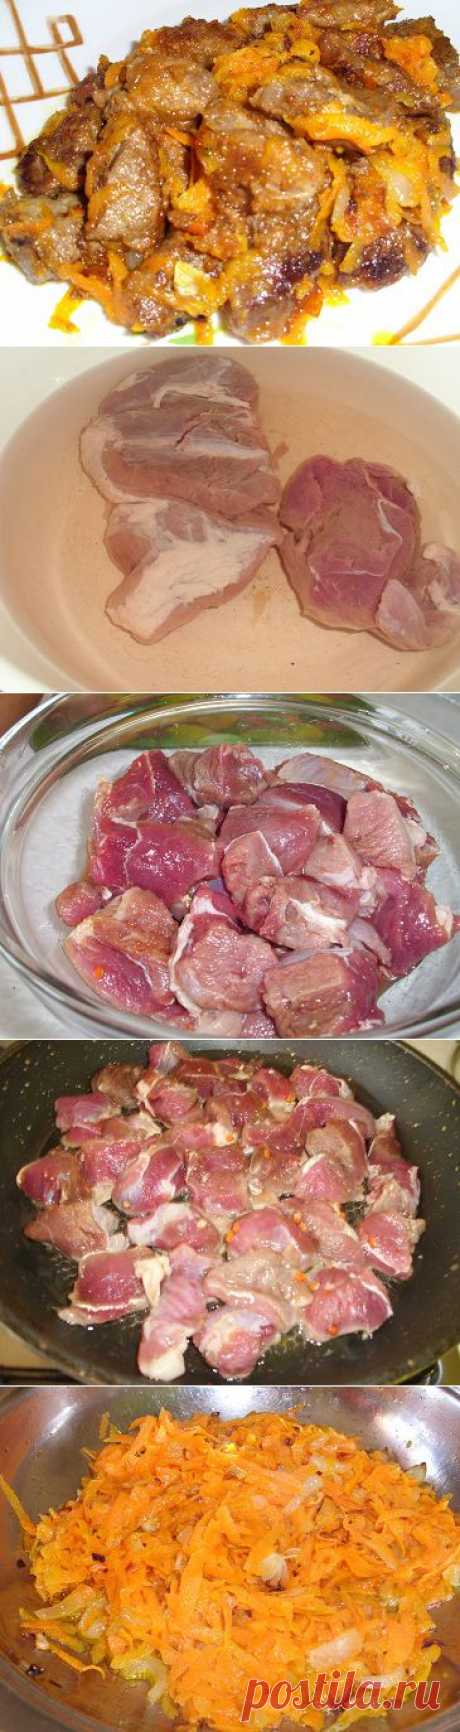 Готовим мясо дикого кабана | Рецепты моей мамы